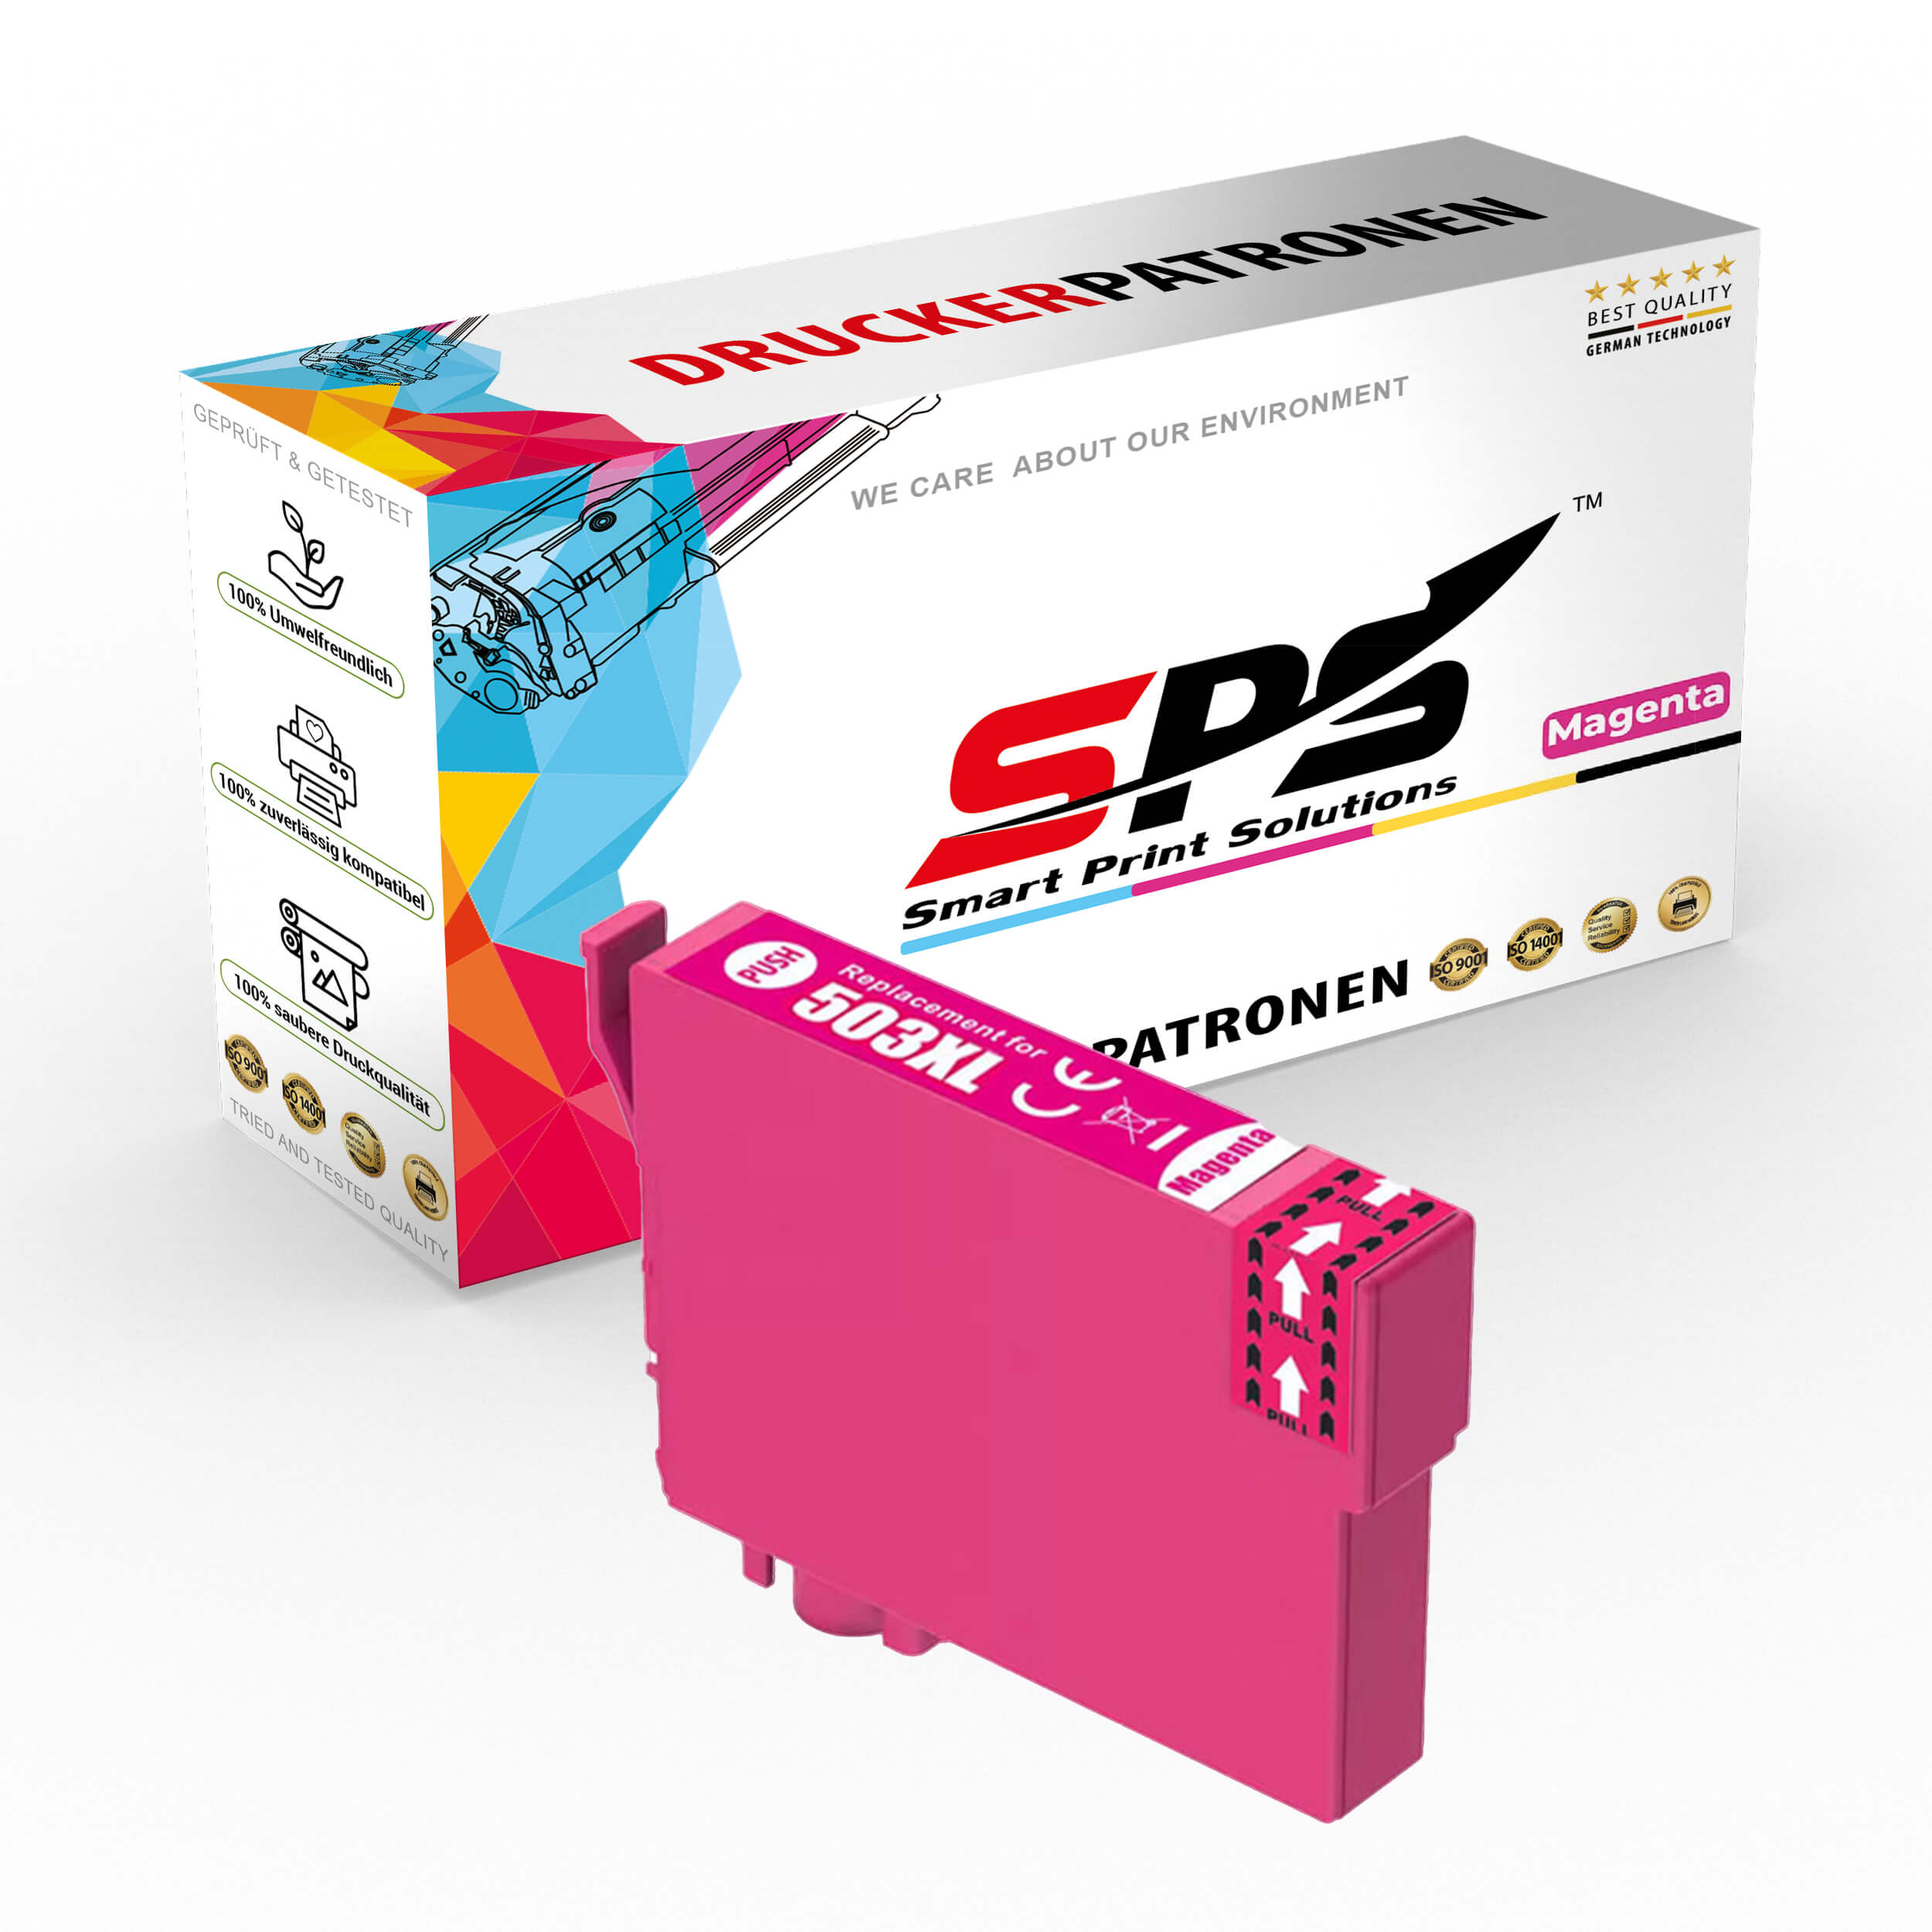 SPS Tintenpatrone E503XL-022 Magenta